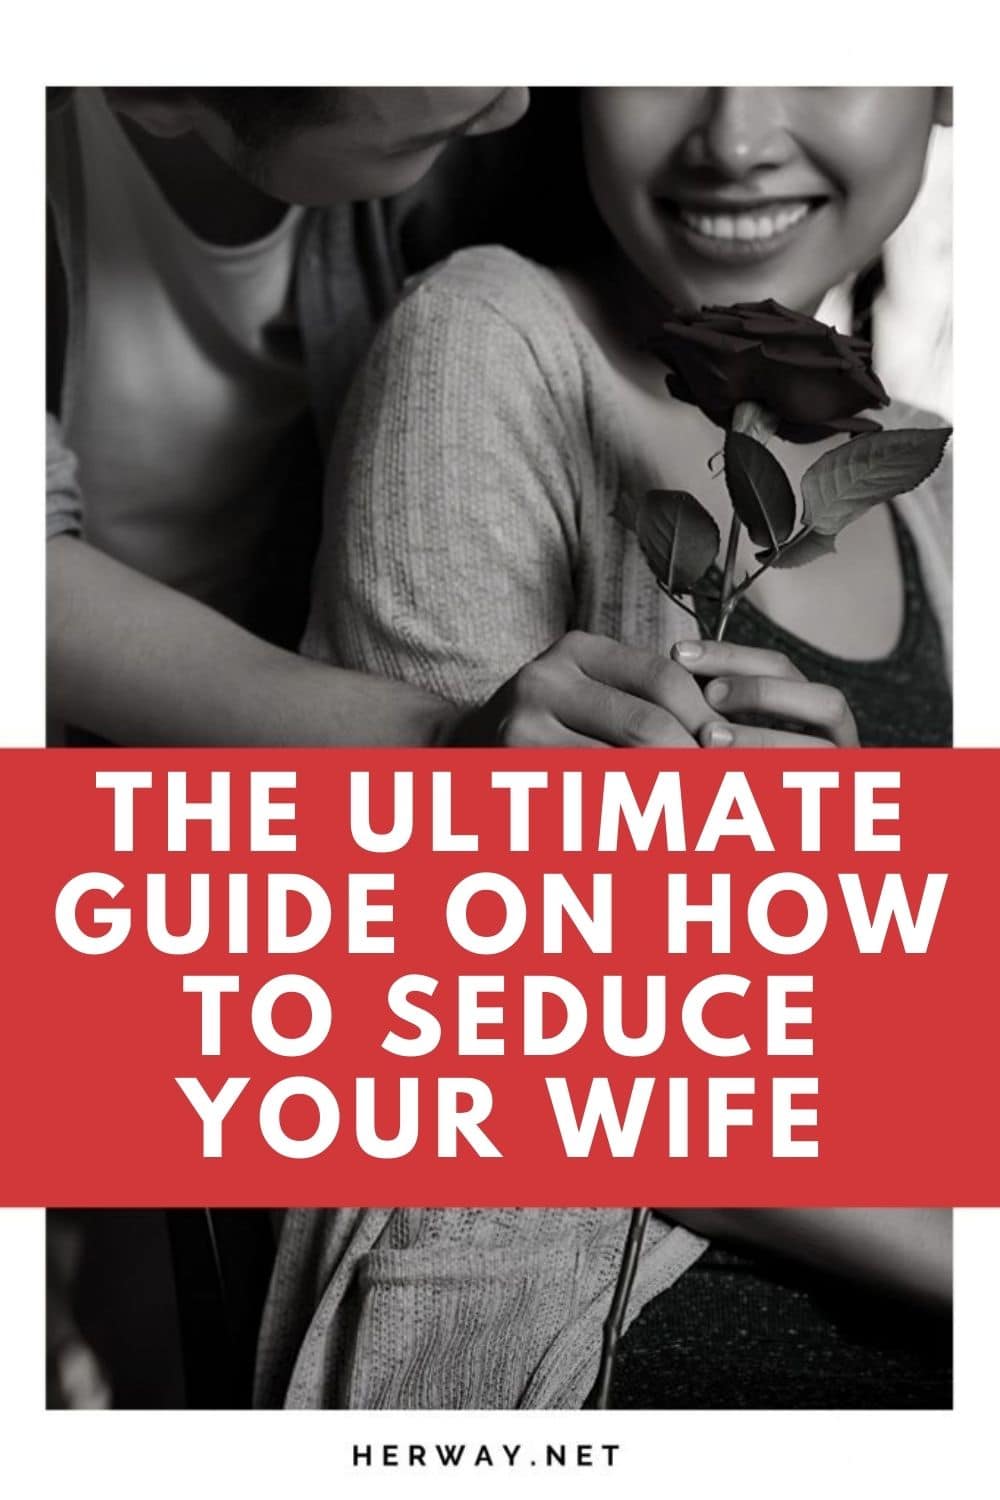 La guida definitiva su come sedurre la moglie